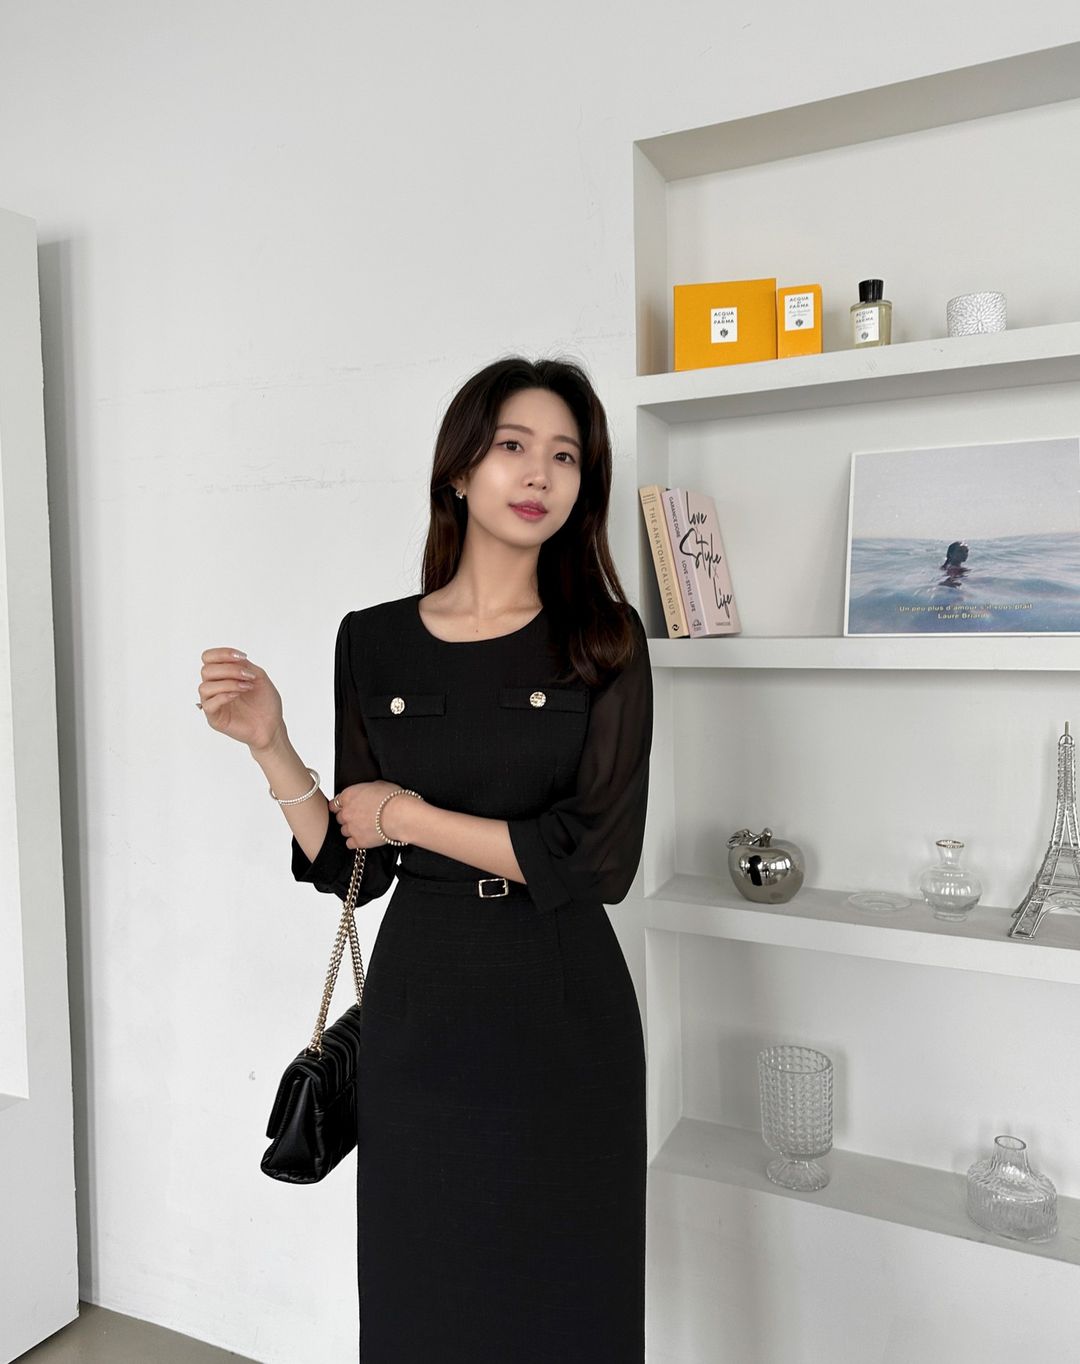 Váy đen tối giản, kiểu váy đáng sắm nhất cho nàng công sở - Ảnh 1.